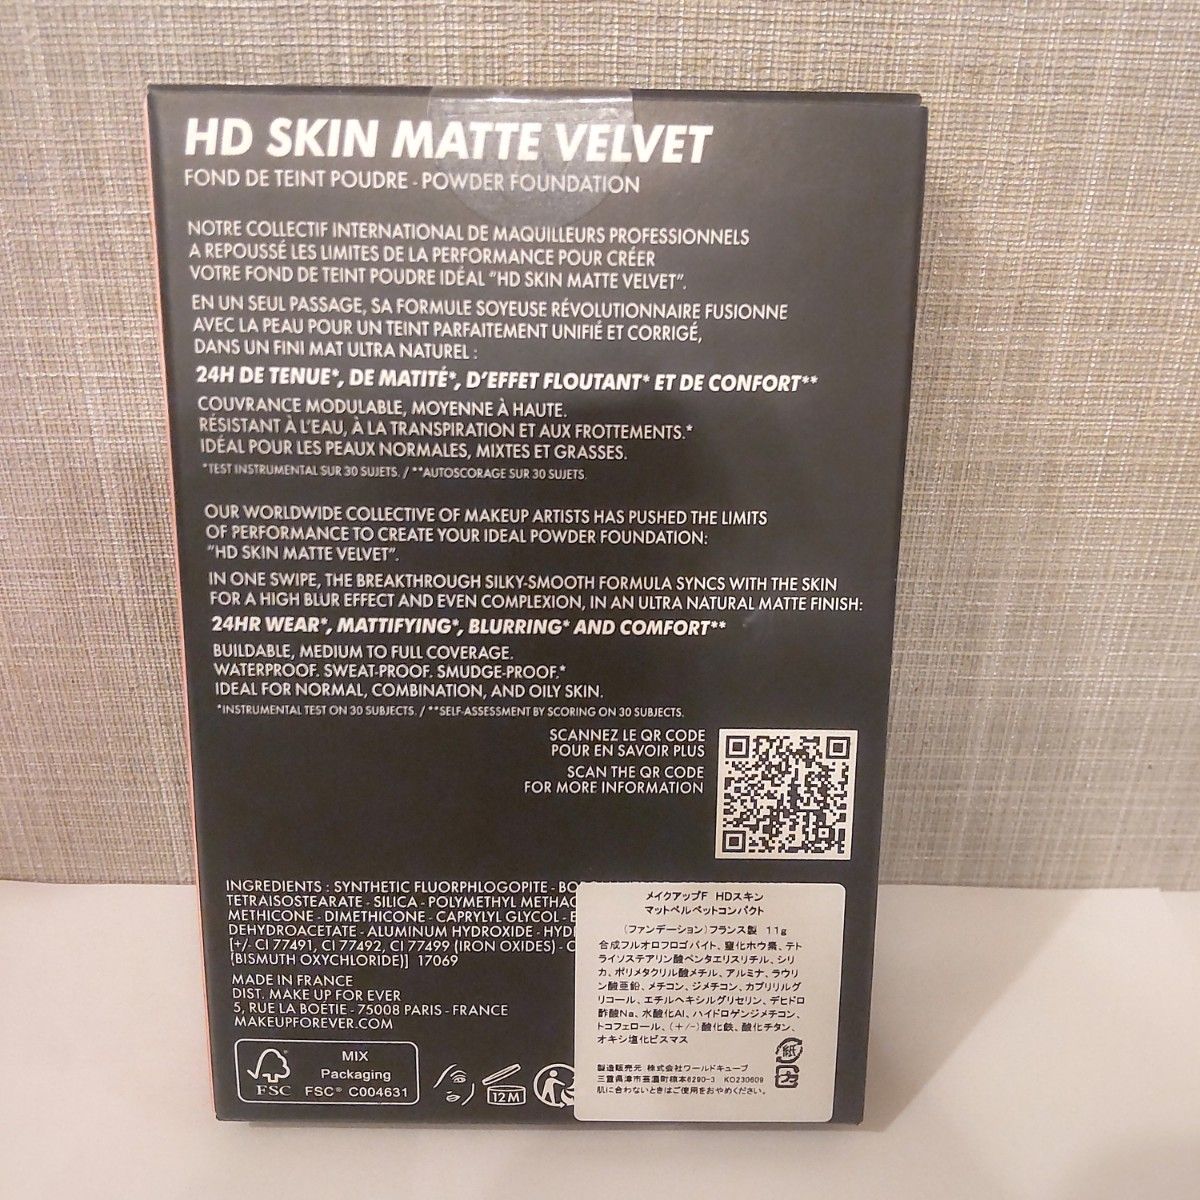 メイクアップ フォー エバー HDスキン マットベルベットコンパクト 1R02